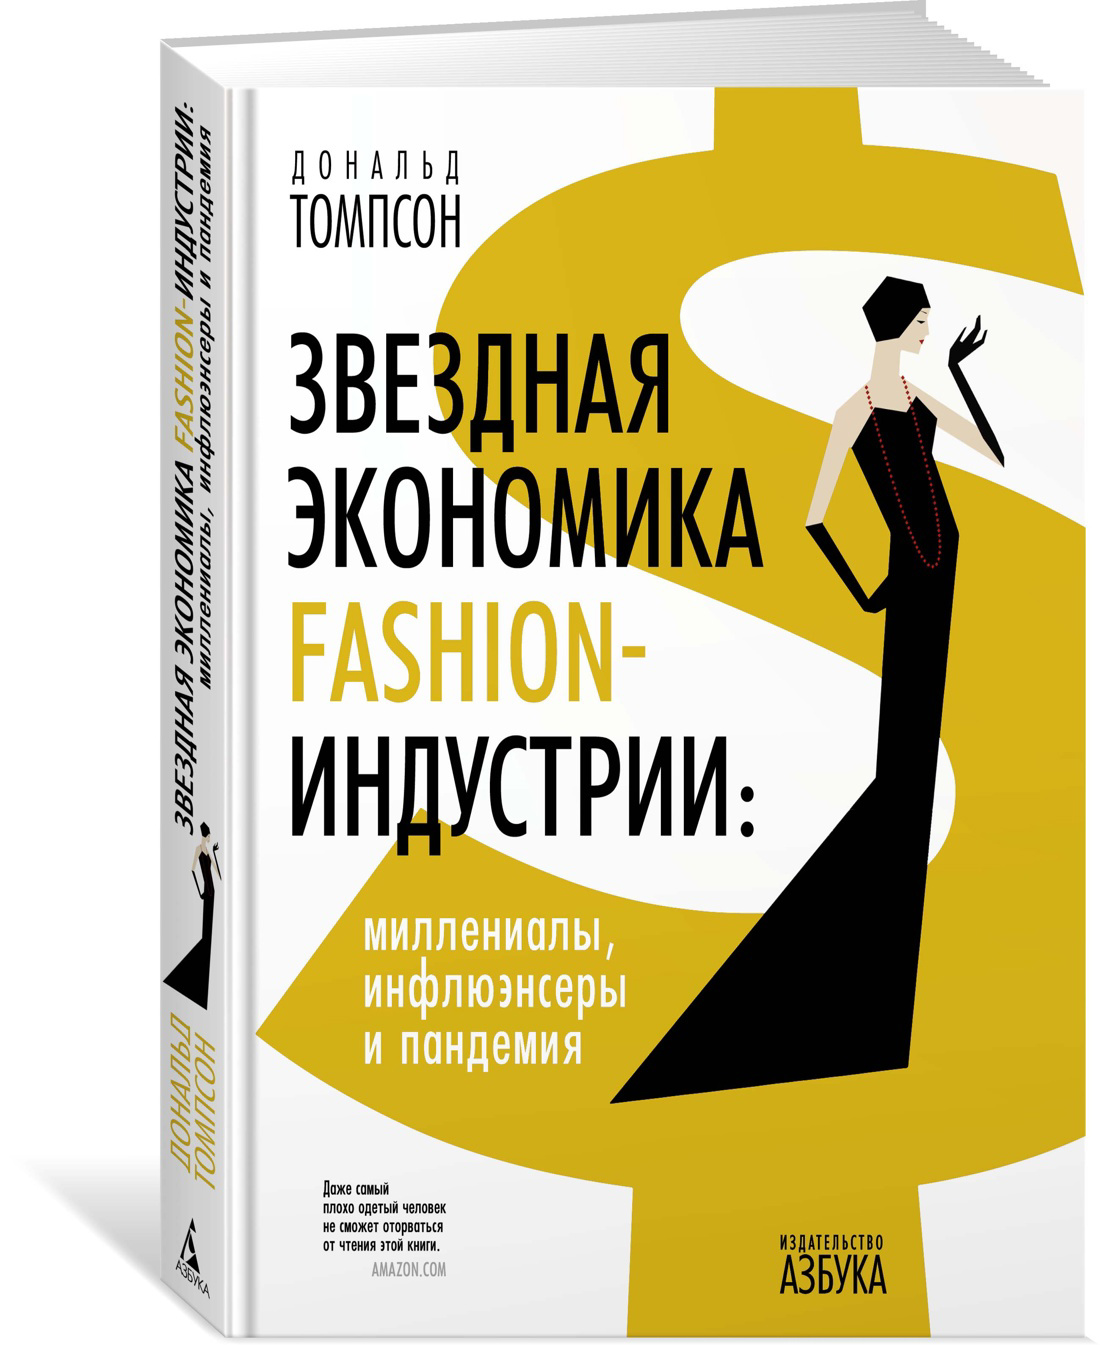 Томпсон Дональд - Звездная экономика fashion-индустрии: миллениалы, инфлюэнсеры и пандемия